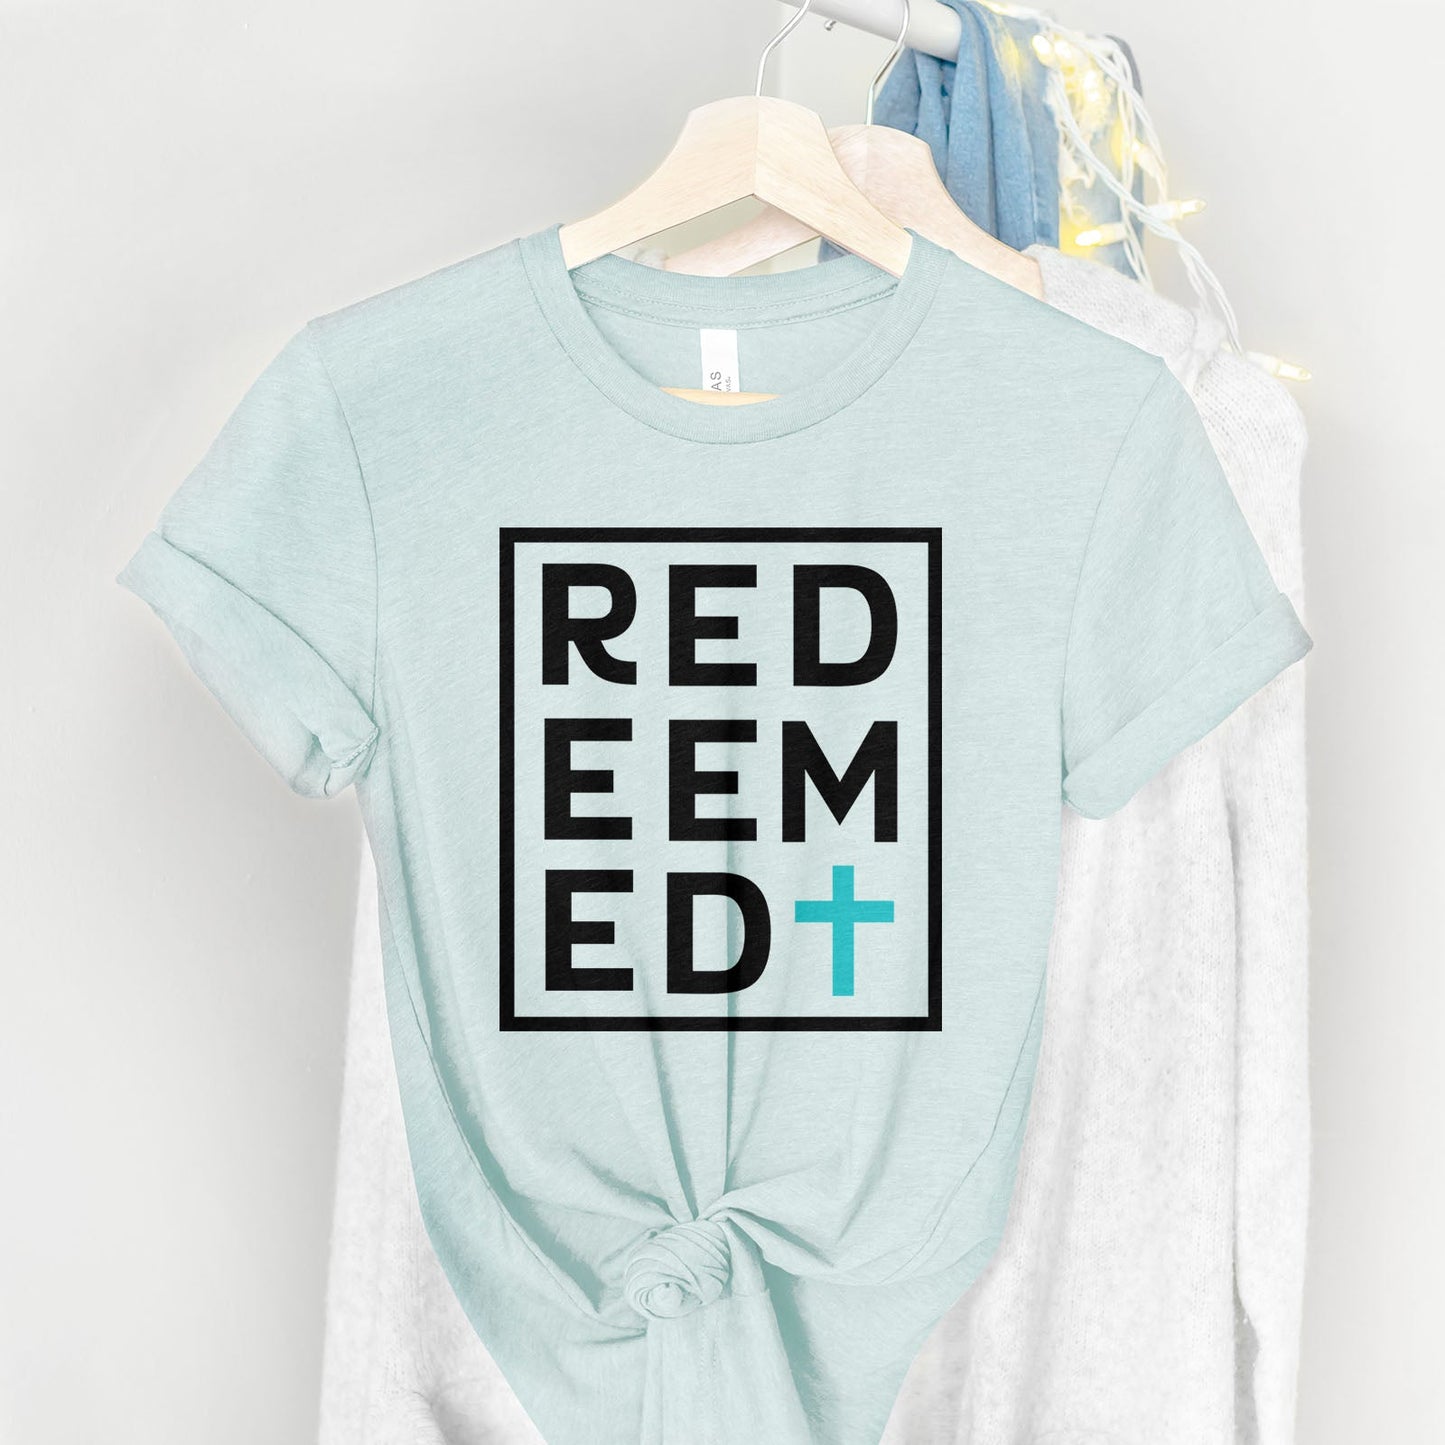 Redeemed Block Tee Shirts For Women - Christian Shirts for Women - Religious Tee Shirts